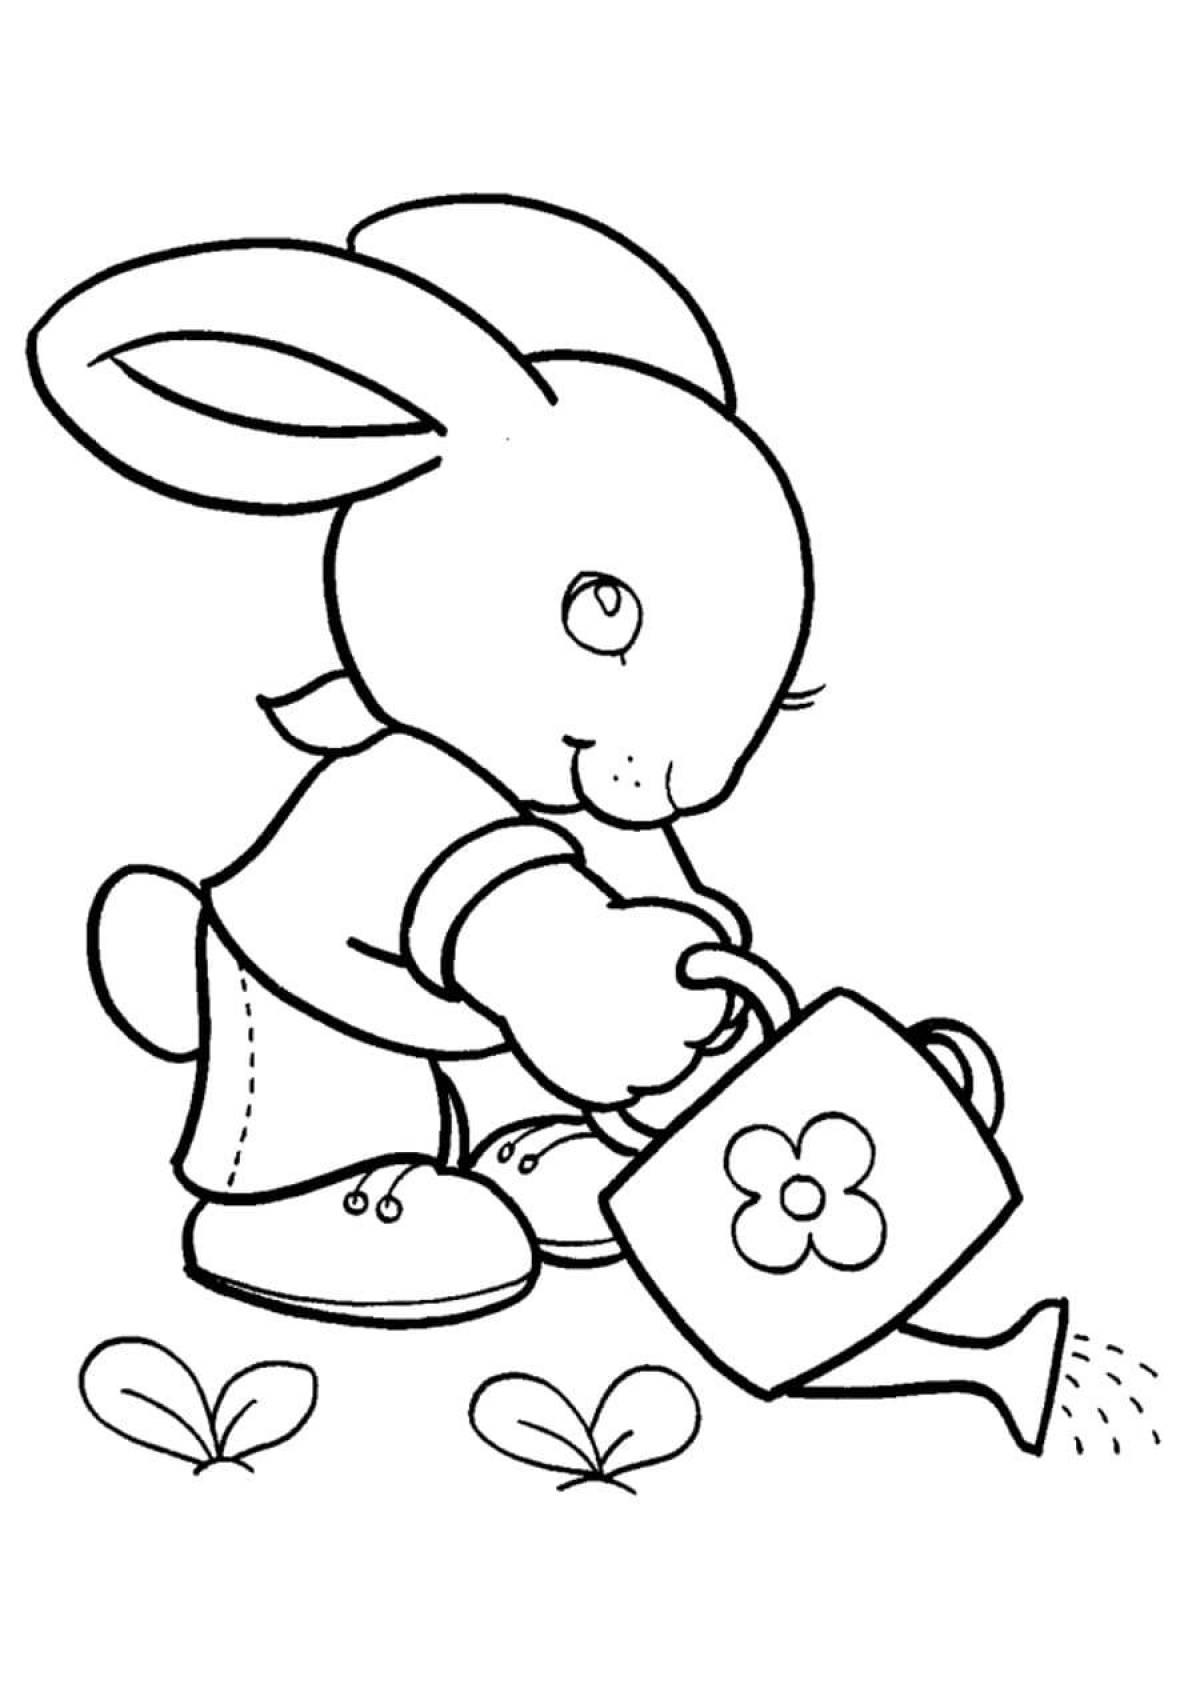 Сказочная раскраска кролик для детей 3-4 лет